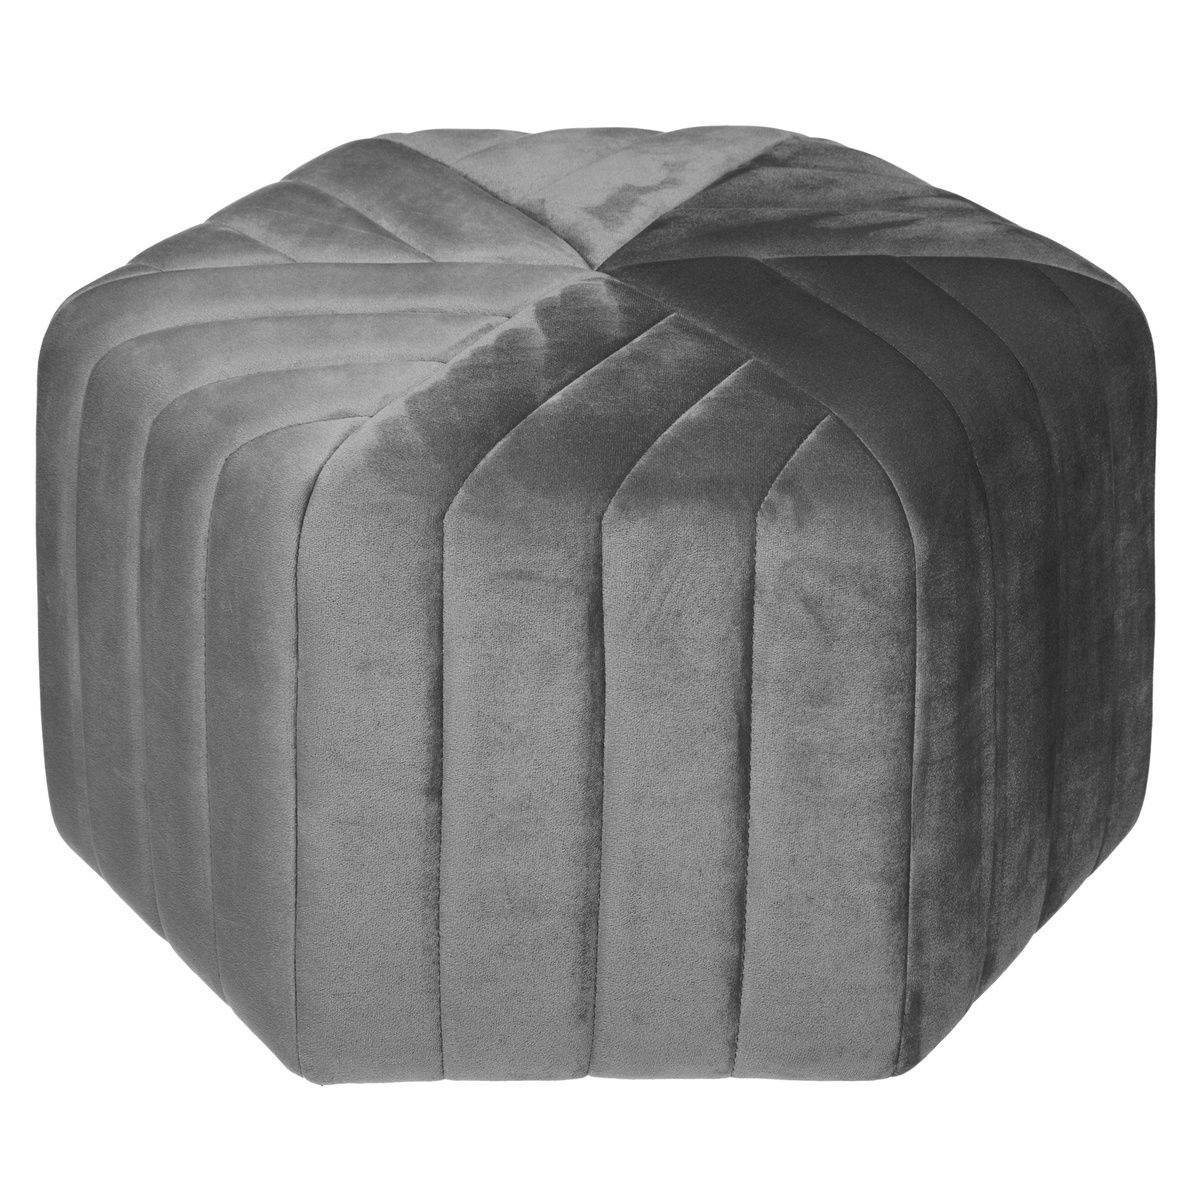 Atmosphera Sametová stolička v šedé barvě, 30 cm - EMAKO.CZ s.r.o.